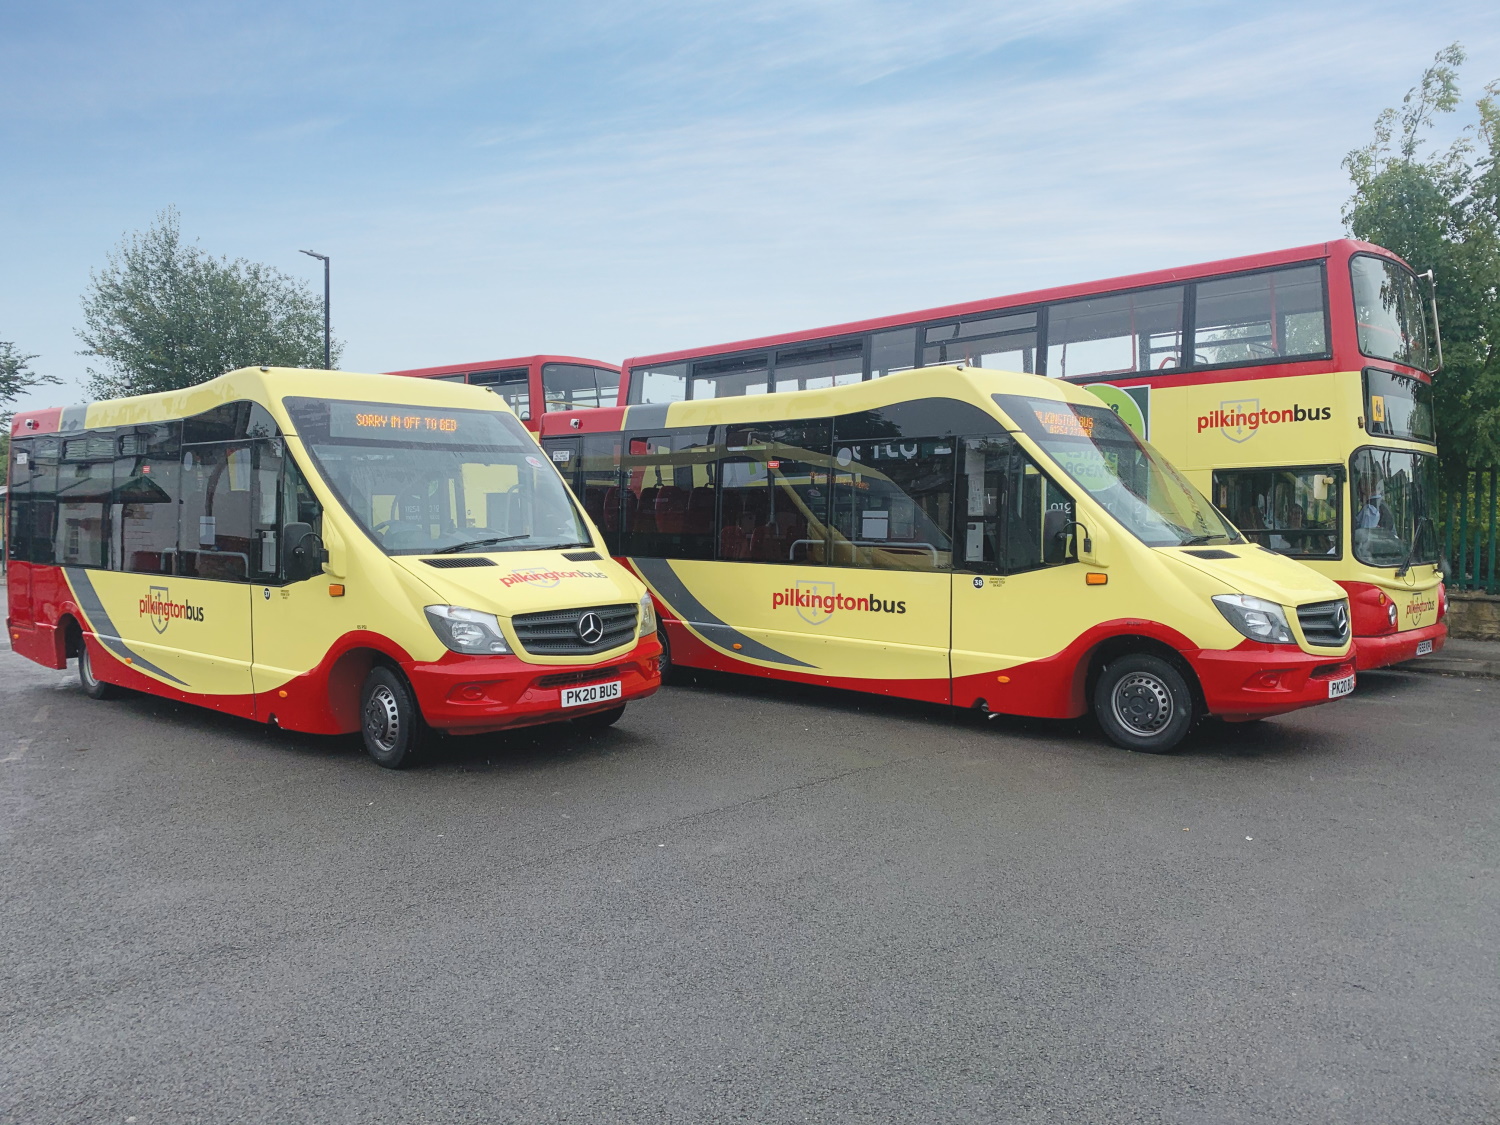 Pilkington Bus to invest half a million pounds